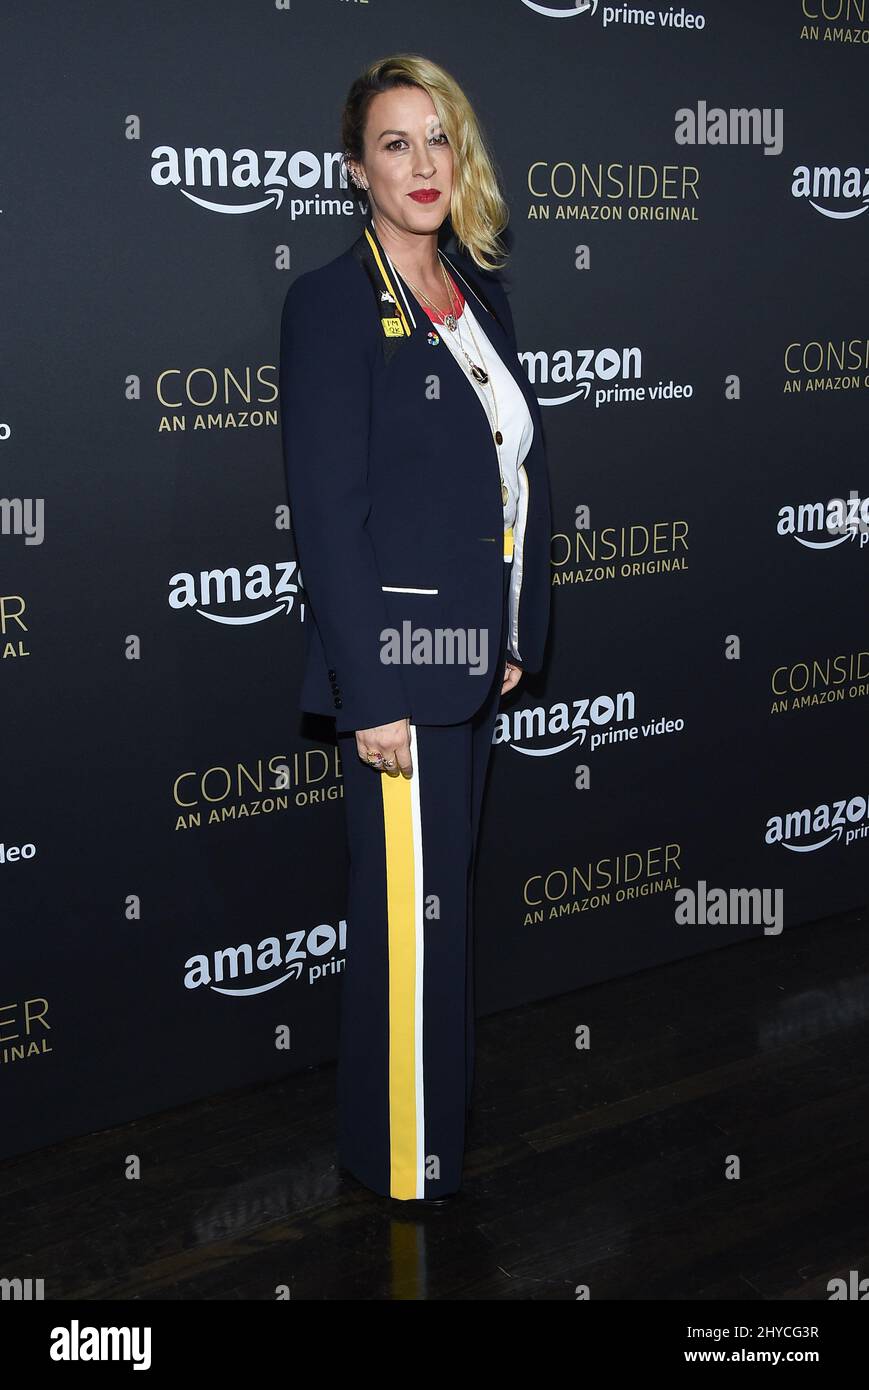 Alanis Morissette arrive à l'événement FYC pour le film « transparent » d'Amazon Video qui s'est tenu au Hollywood Athletic Club de Los Angeles, aux États-Unis Banque D'Images